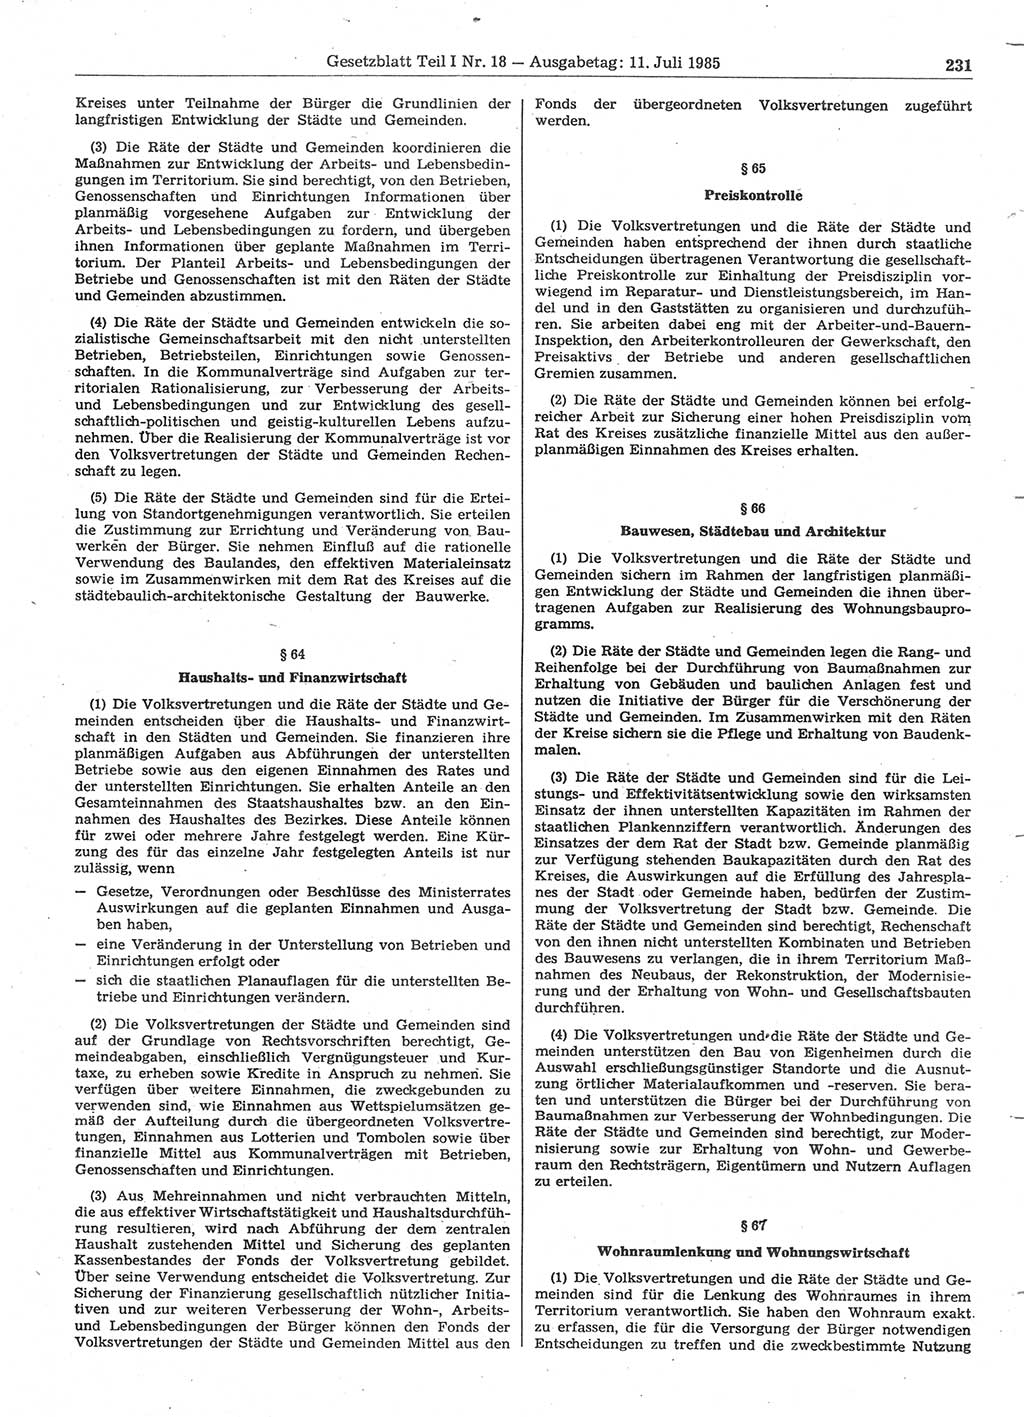 Gesetzblatt (GBl.) der Deutschen Demokratischen Republik (DDR) Teil Ⅰ 1985, Seite 231 (GBl. DDR Ⅰ 1985, S. 231)